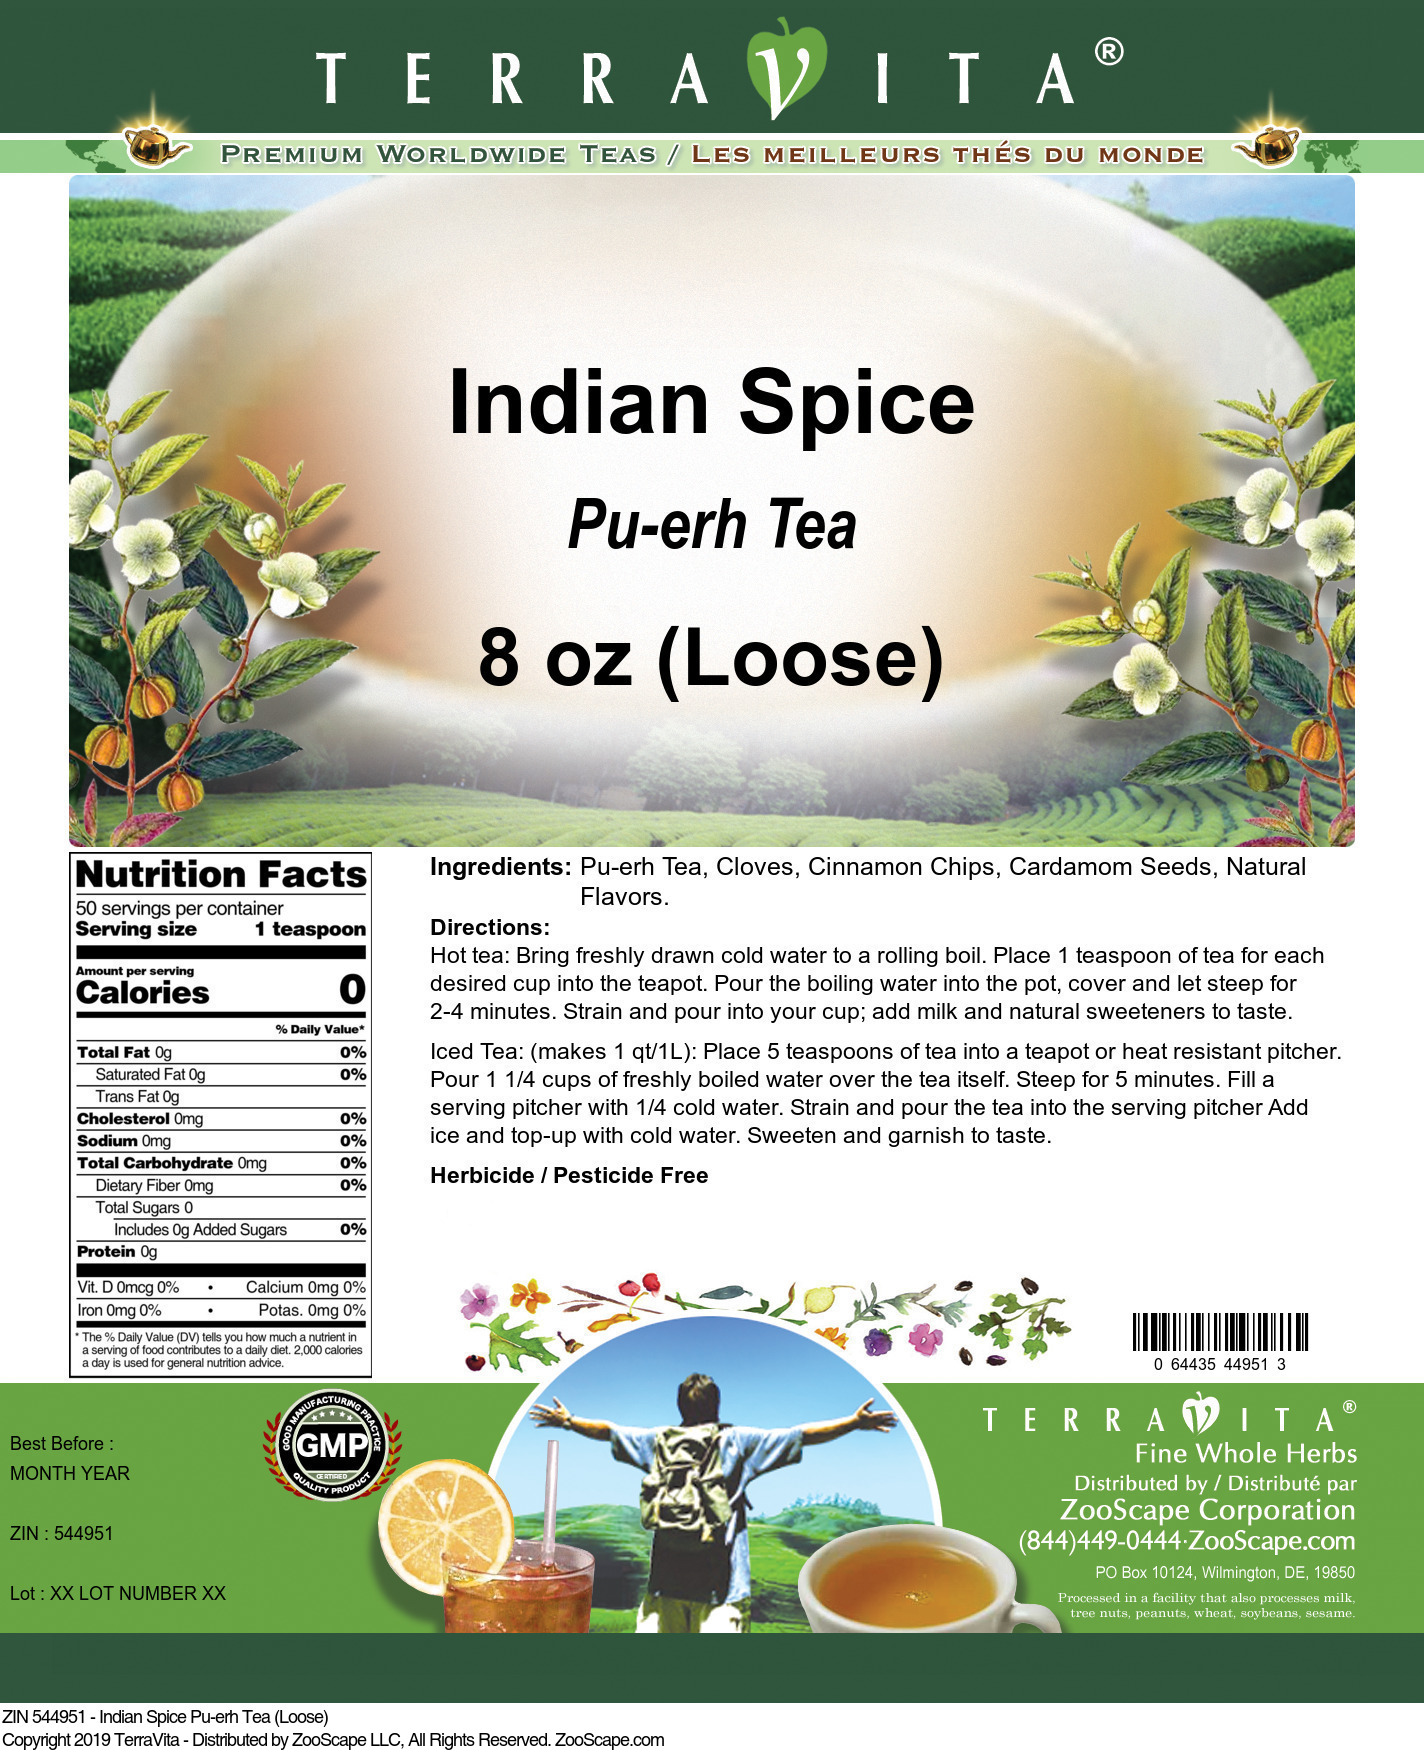 Indian Spice Pu-erh Tea (Loose) - Label